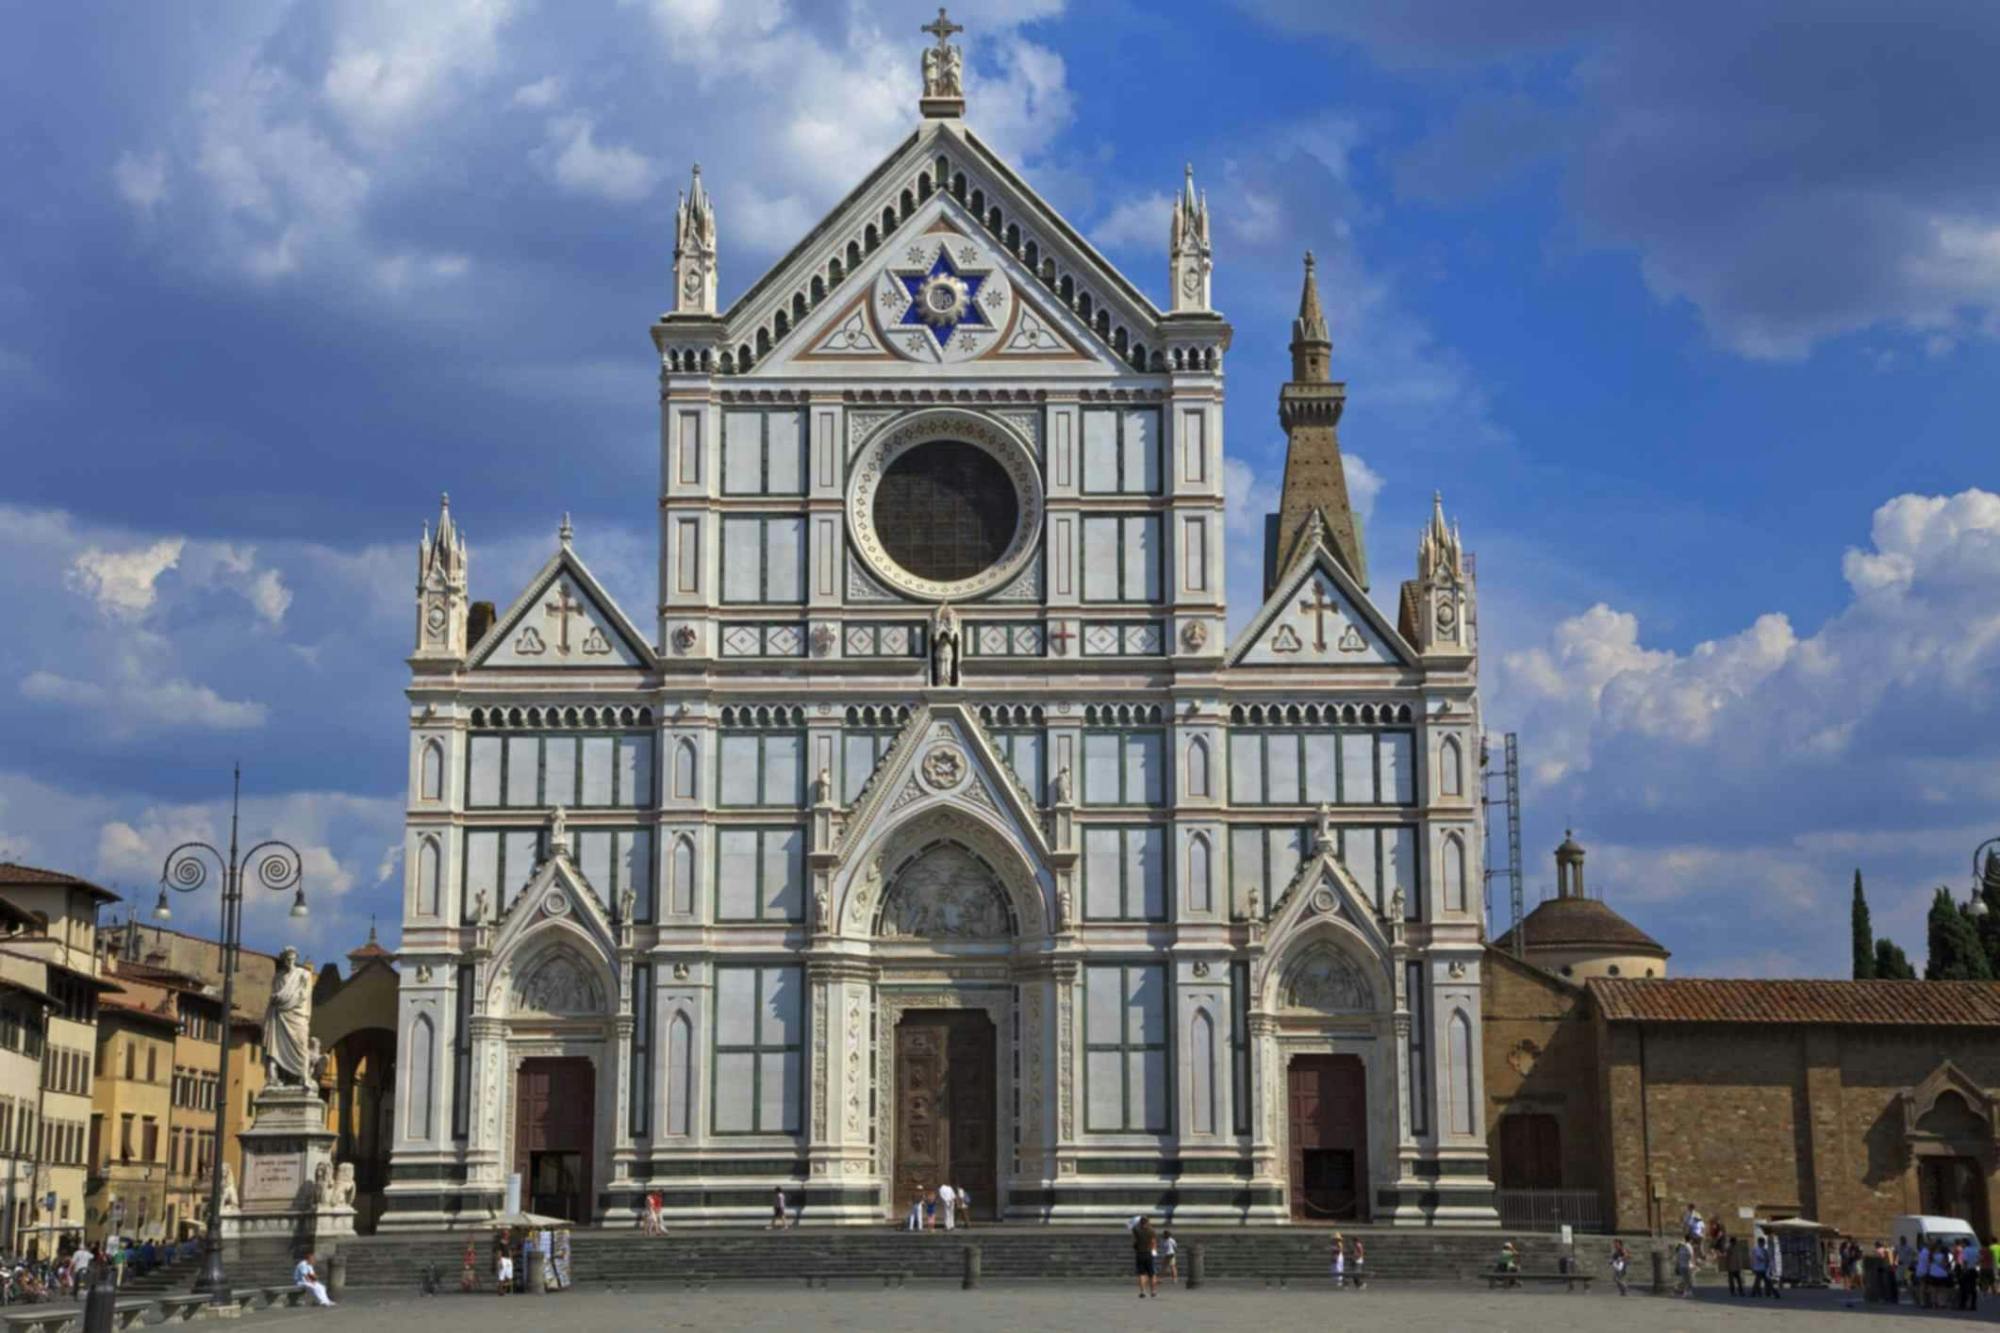 Boleto electrónico a Santa Croce con audioguía y recorrido en audio por la ciudad de Florencia